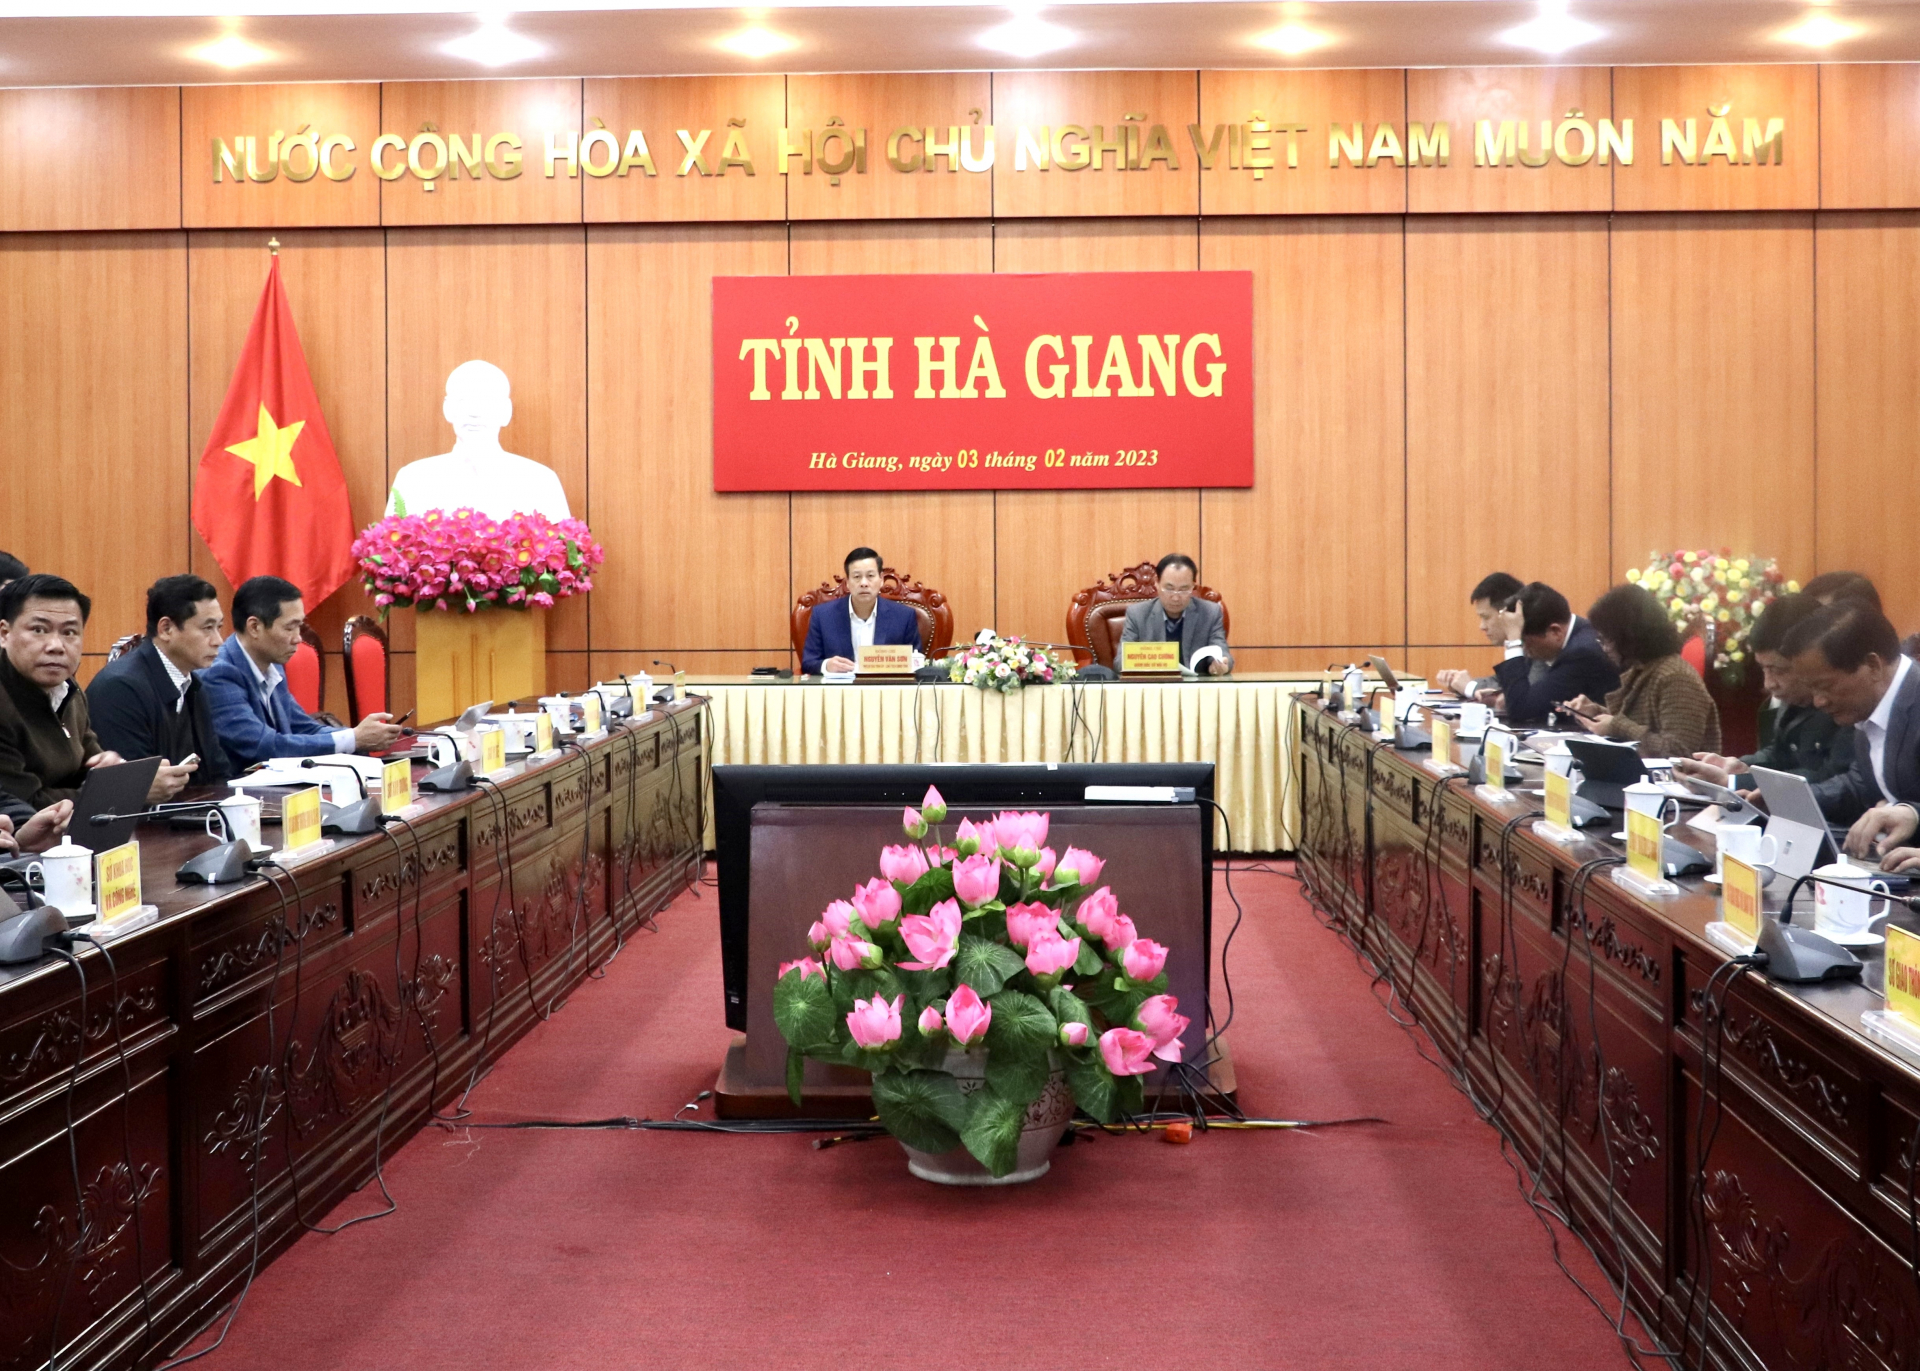 Chủ tịch UBND tỉnh Nguyễn Văn Sơn và các đại biểu dự phiên họp tại điểm cầu Hà Giang.